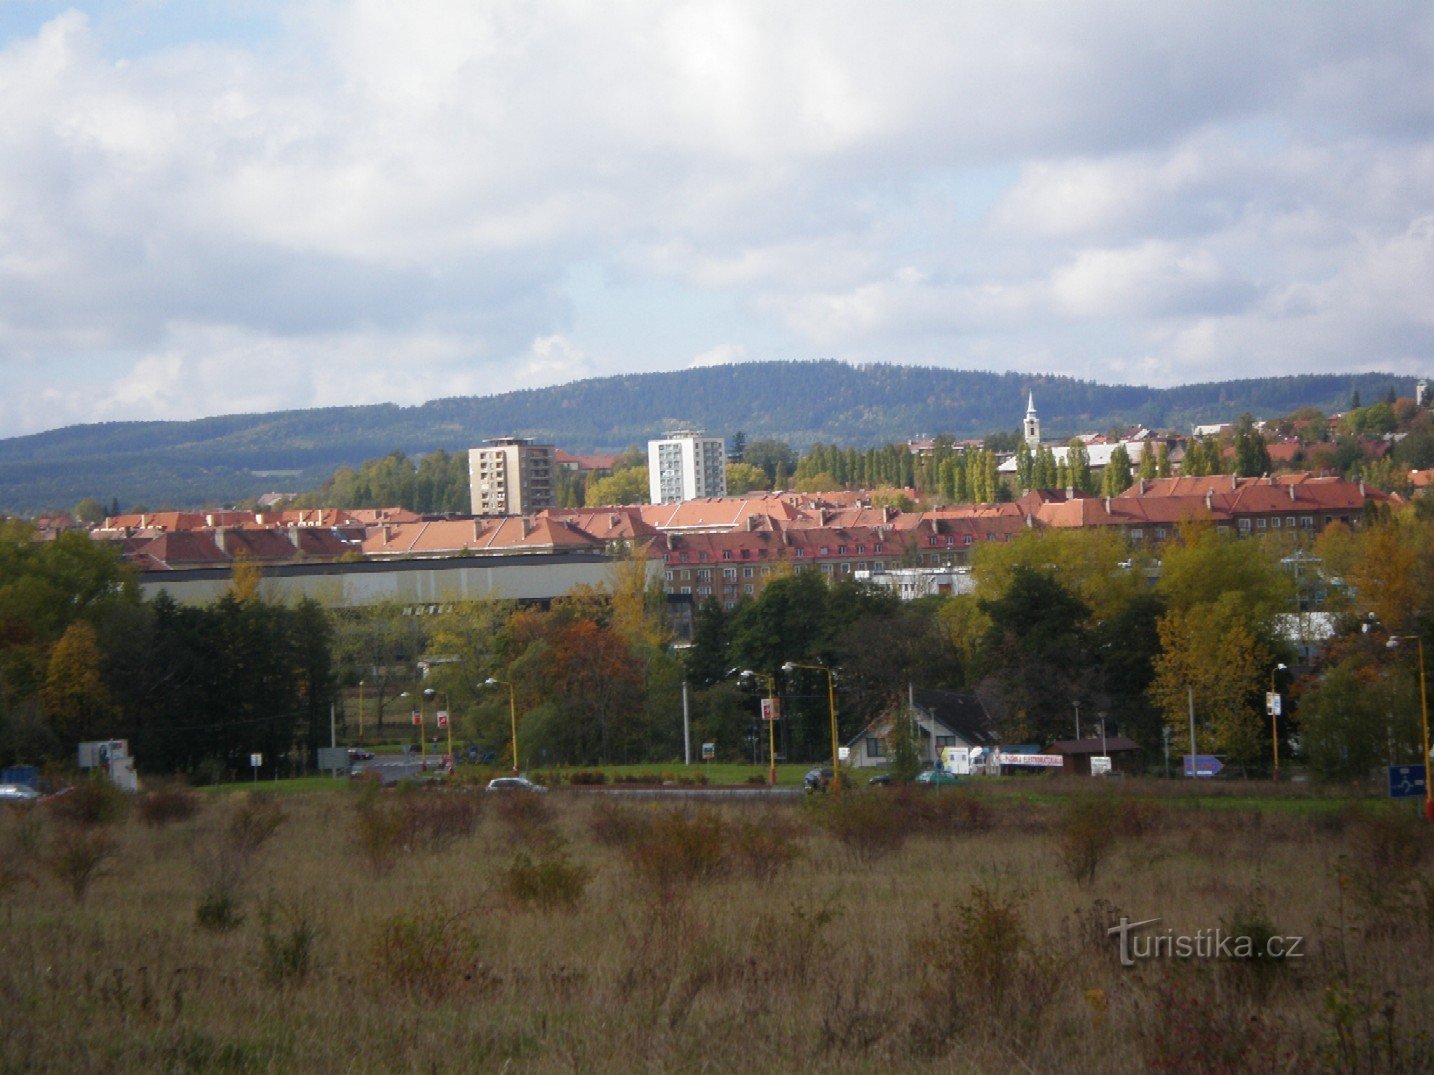 Mount Třemošná above Příbramí